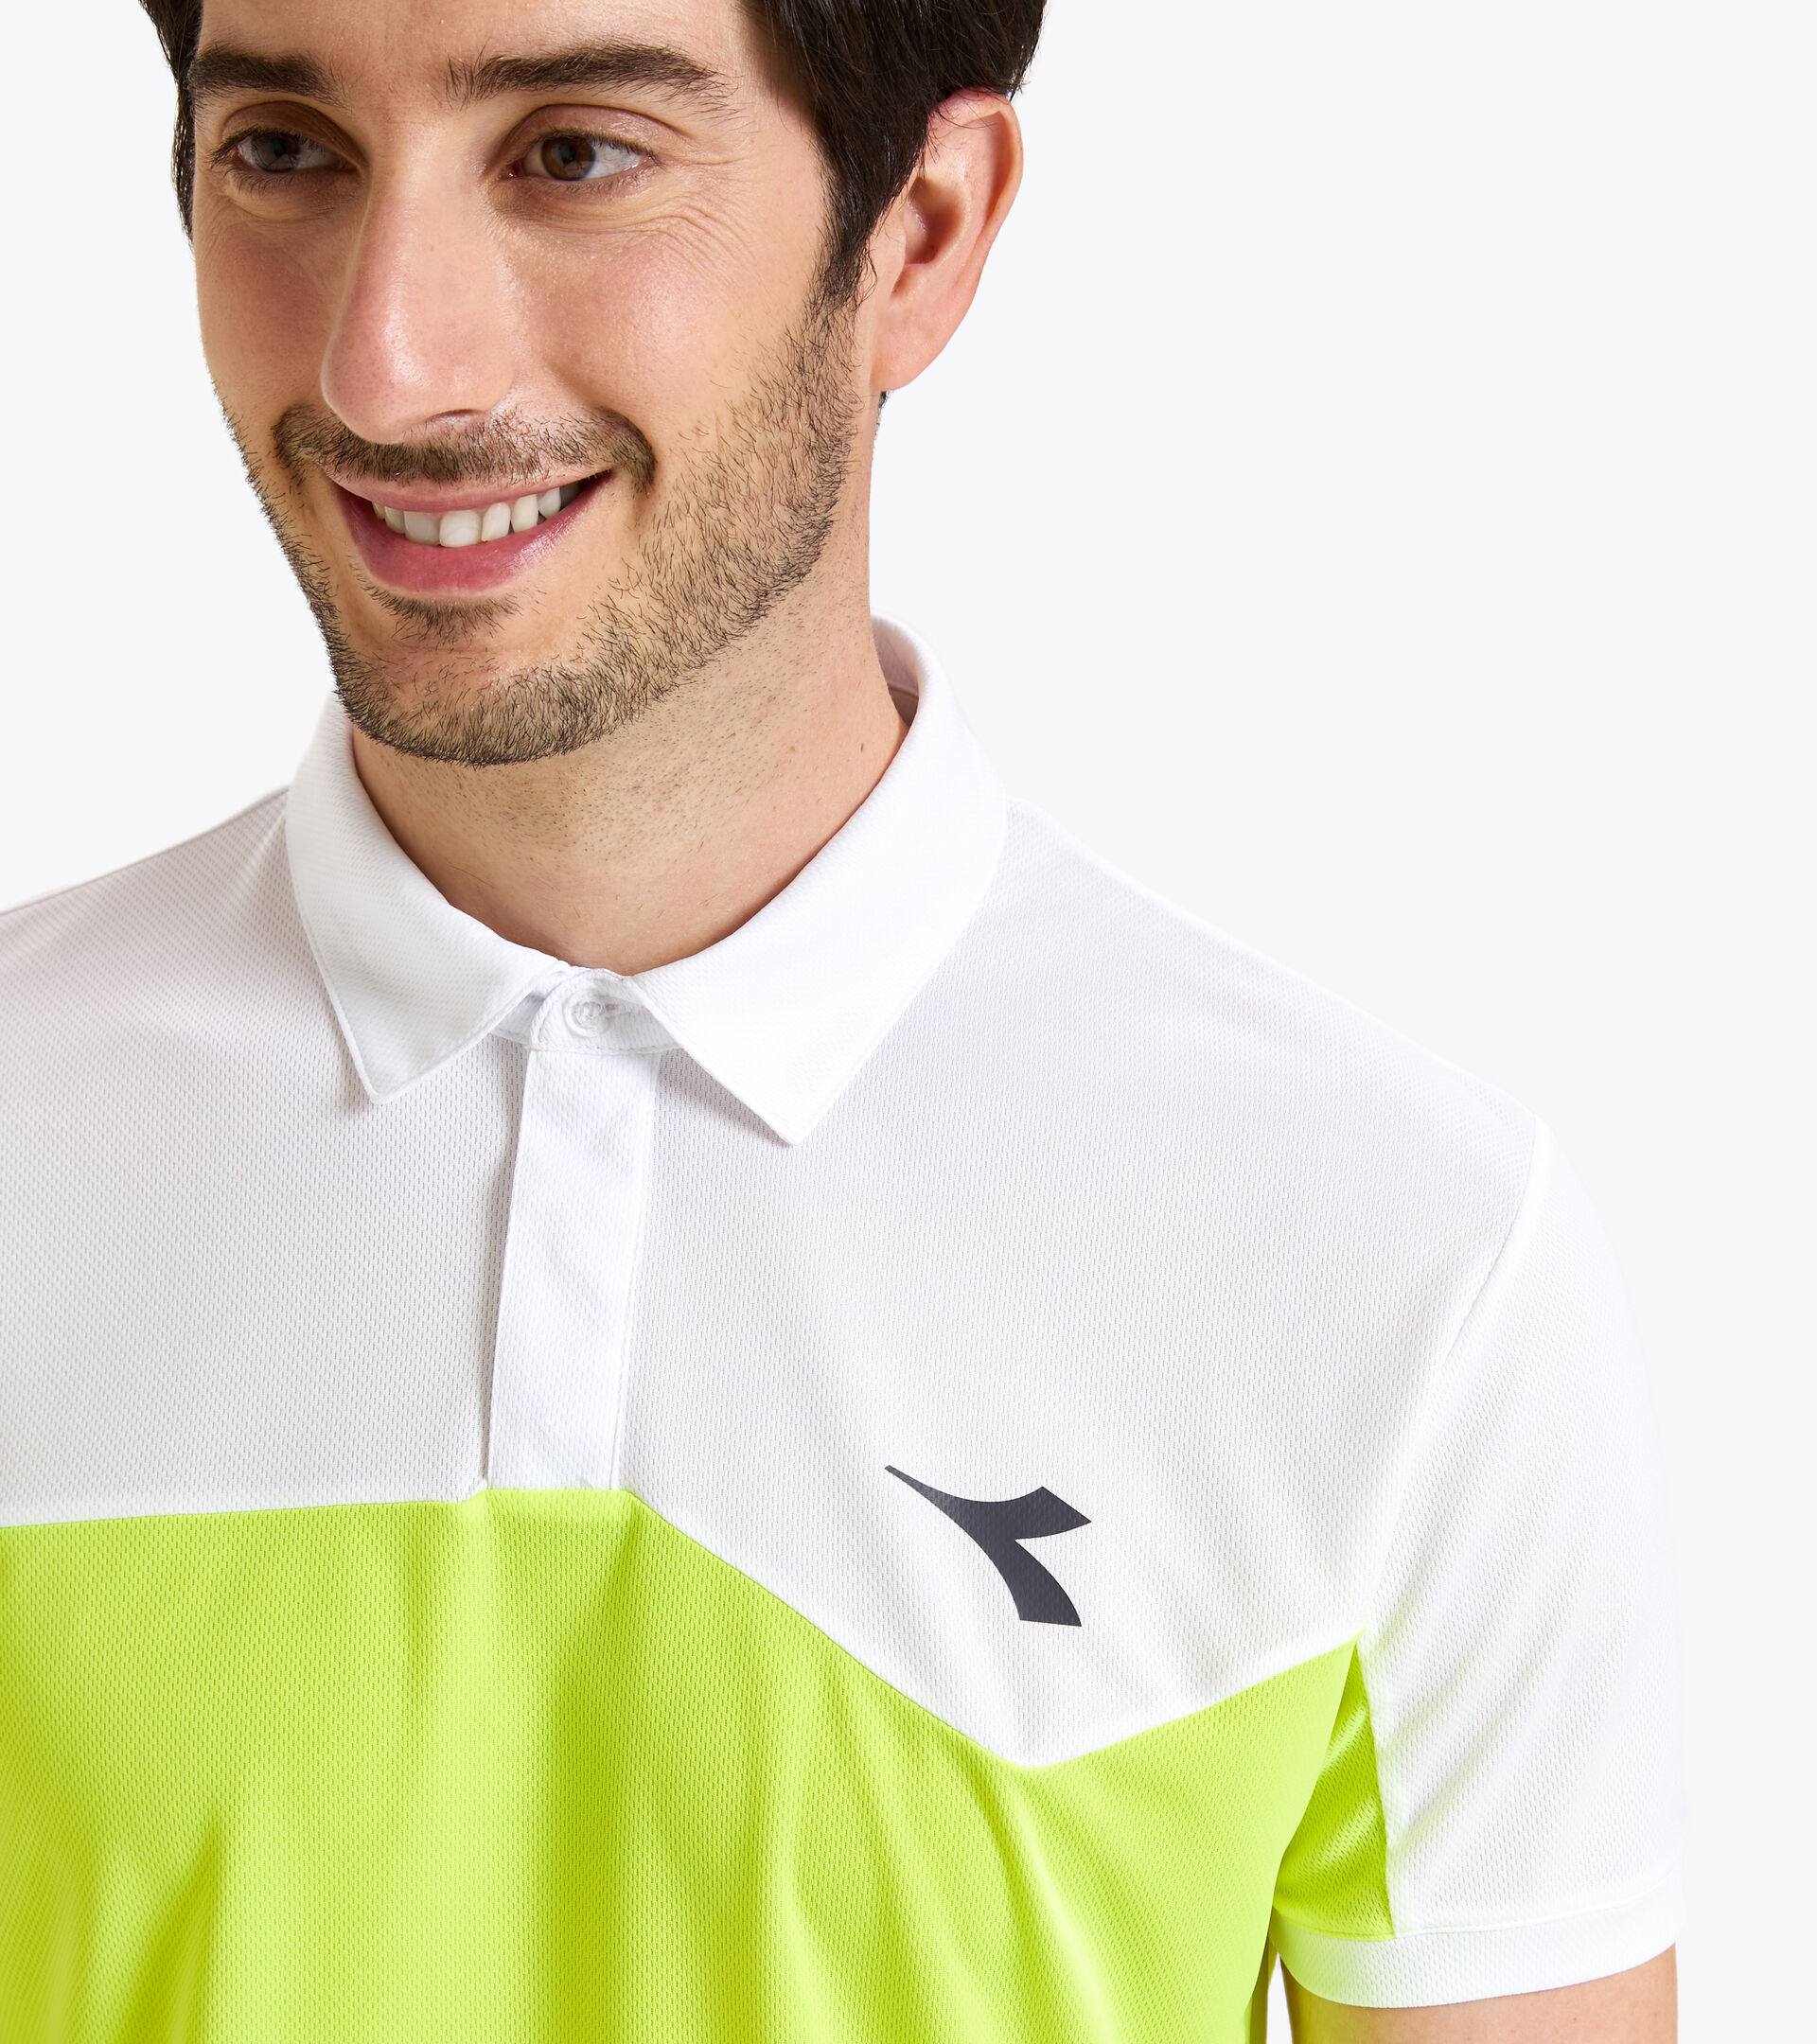 Tennis polo shirt - Men POLO COURT FLUO YELLOW DD - Diadora